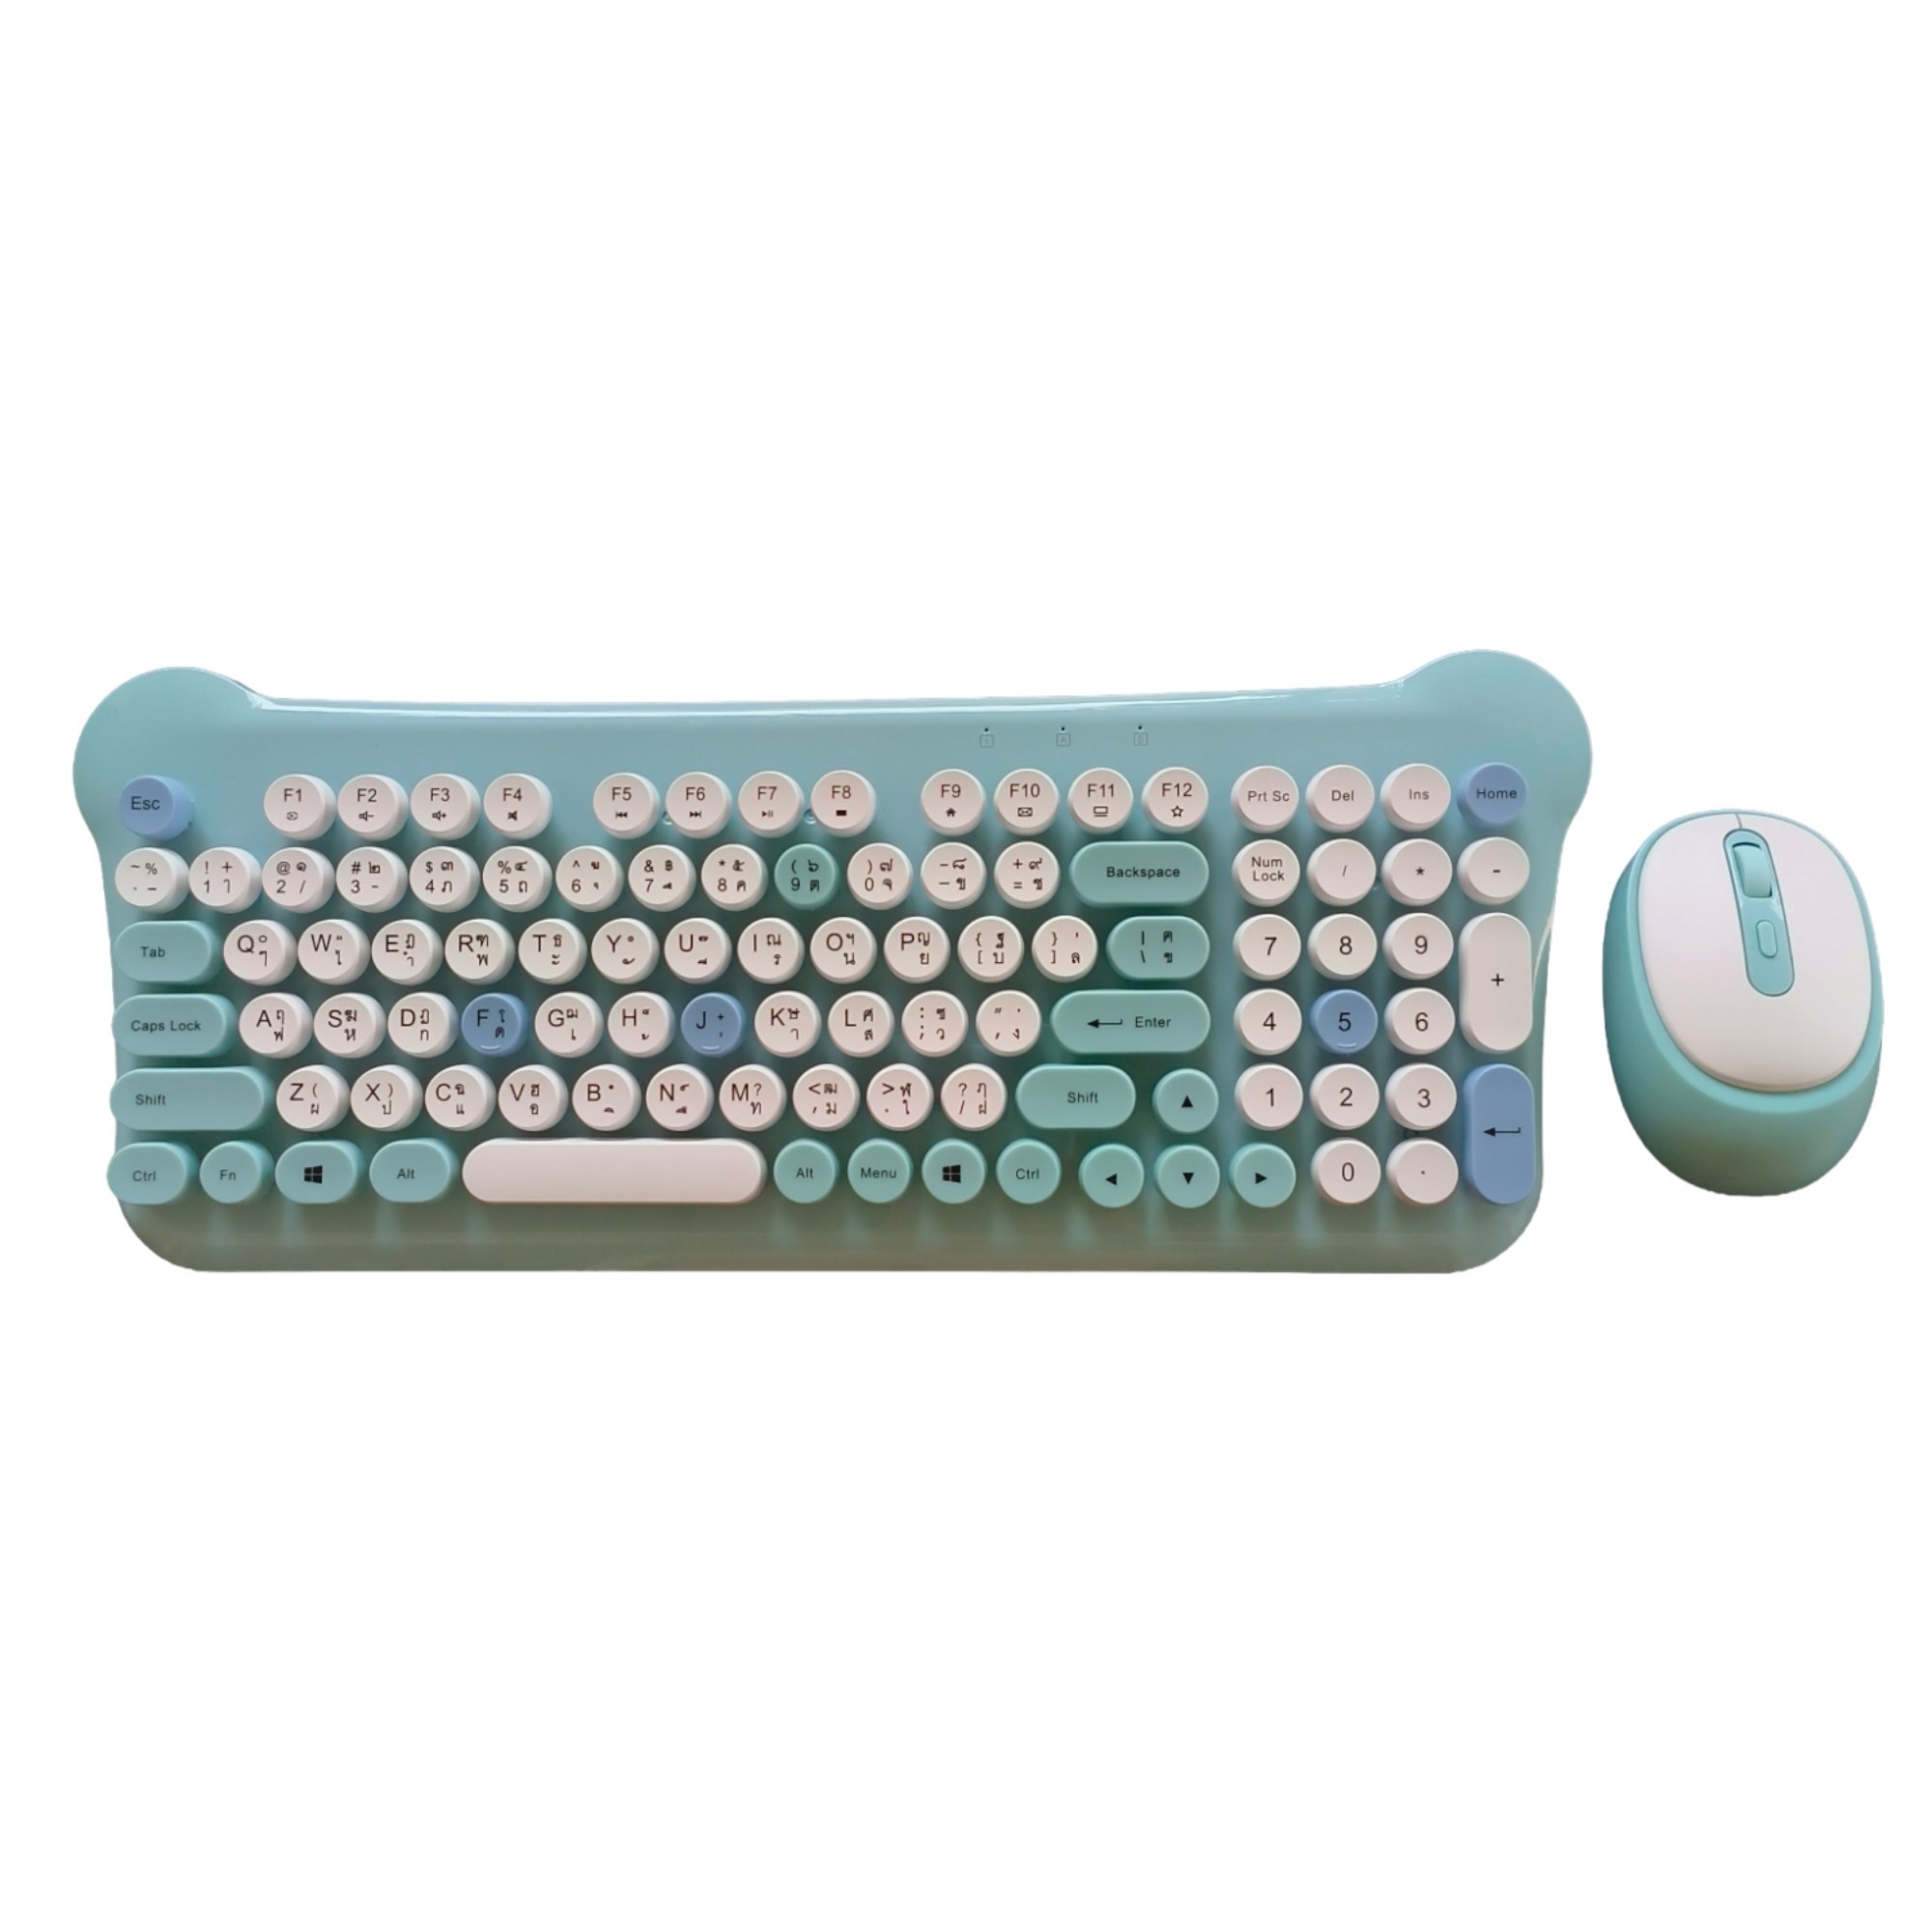 GEEZER Wireless Keyboard Mouse Combo 104 Keys HELLO BEAR